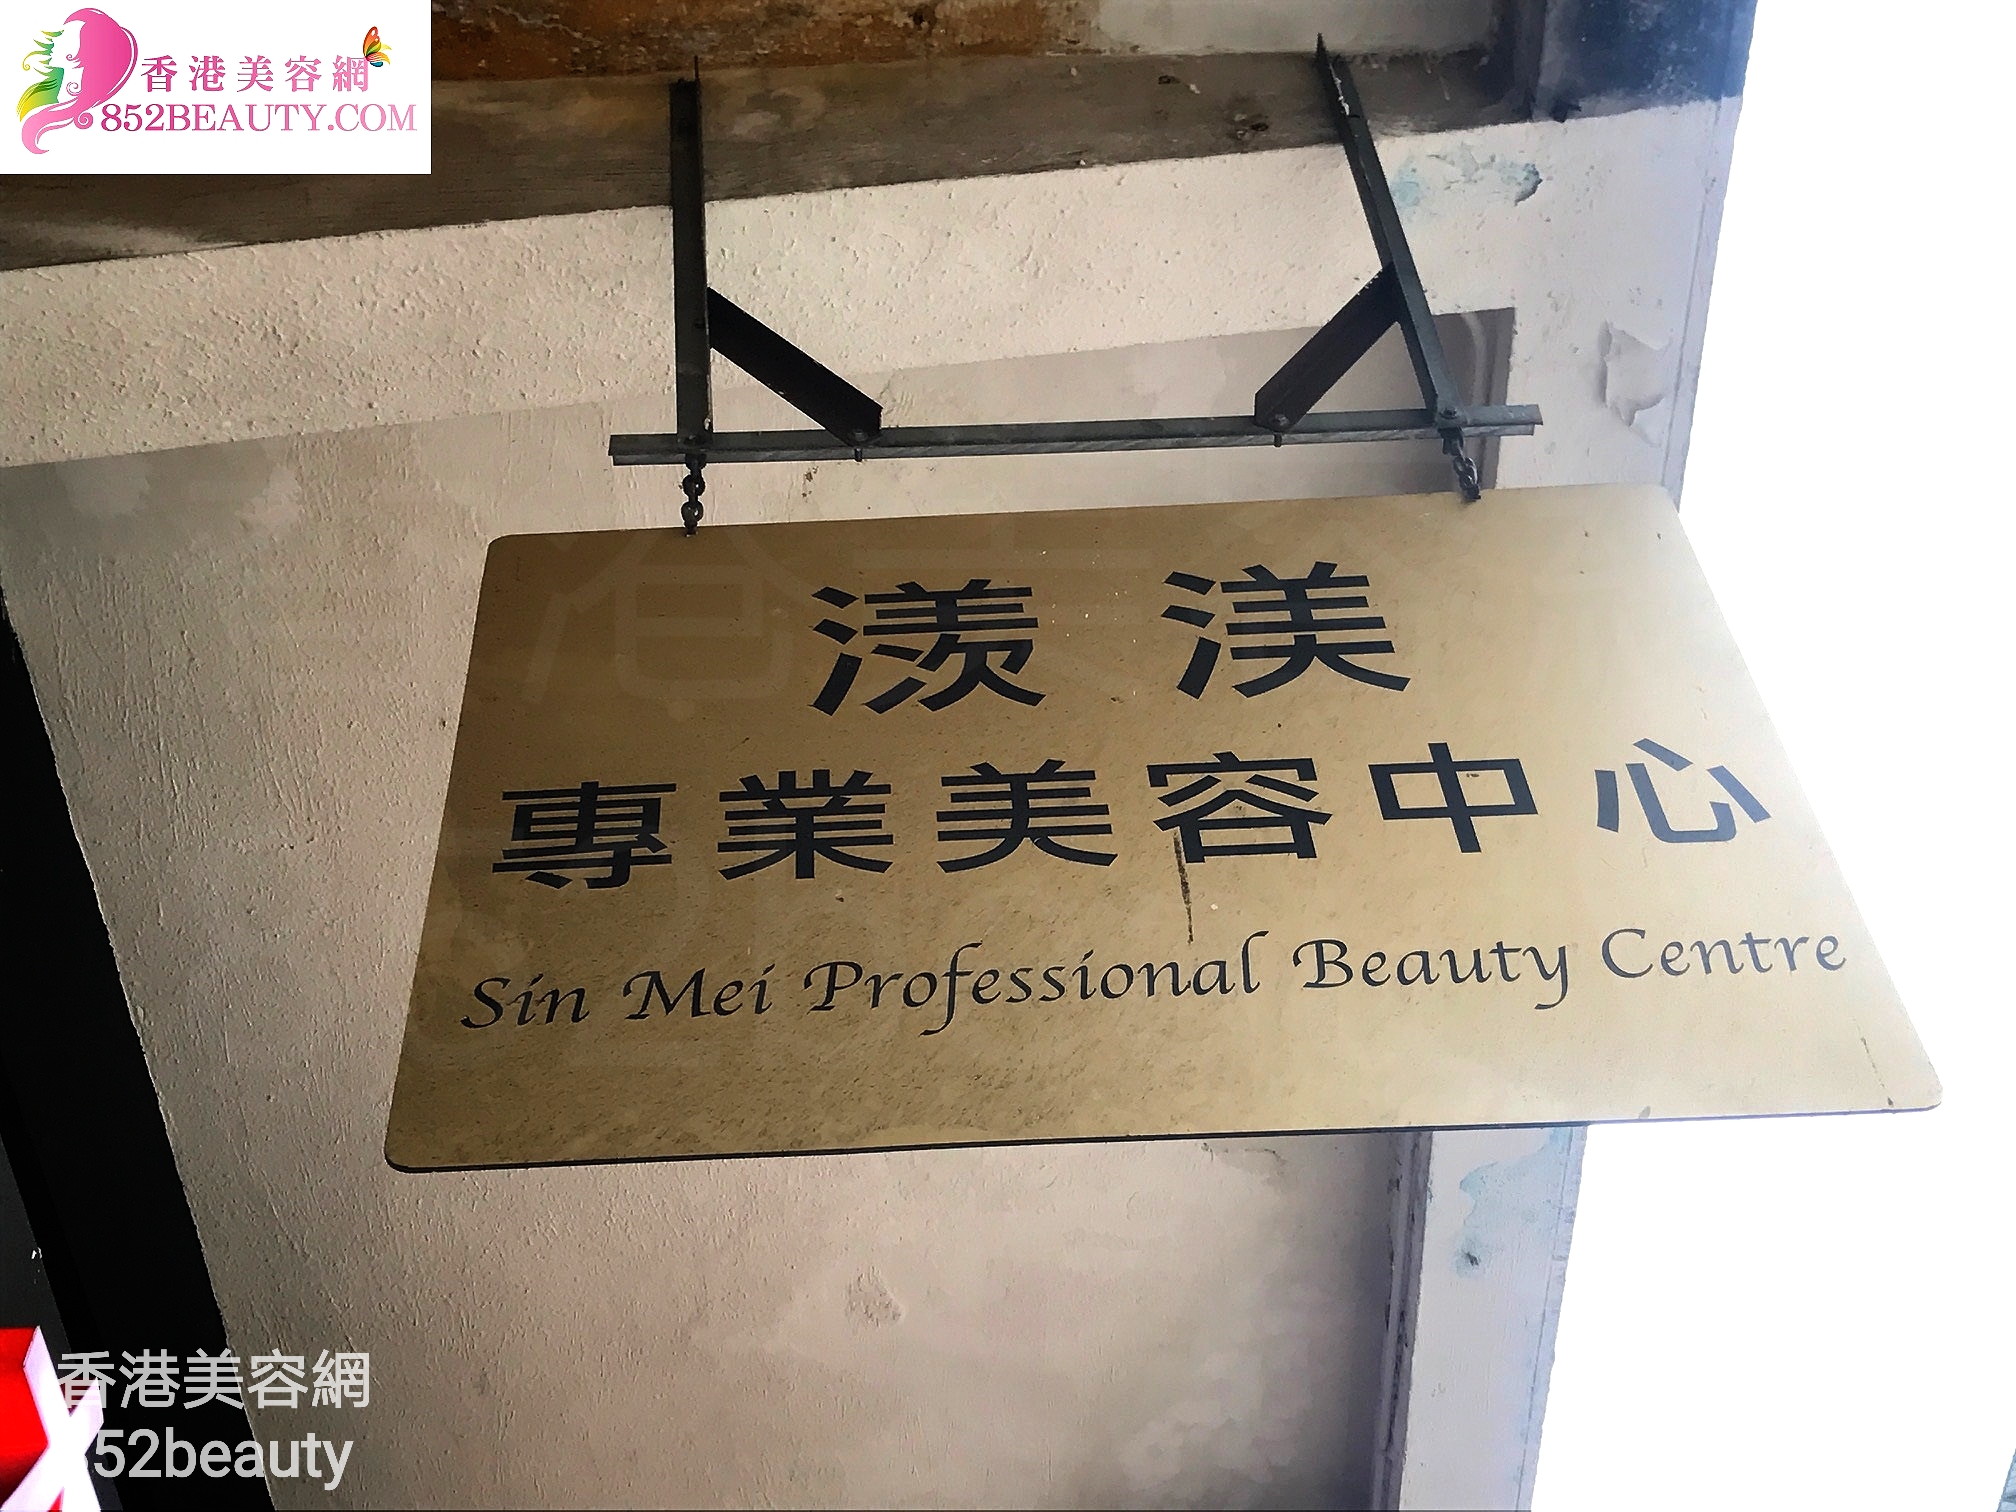 香港美容網 Hong Kong Beauty Salon 美容院 / 美容師: 㵪渼專業美容中心